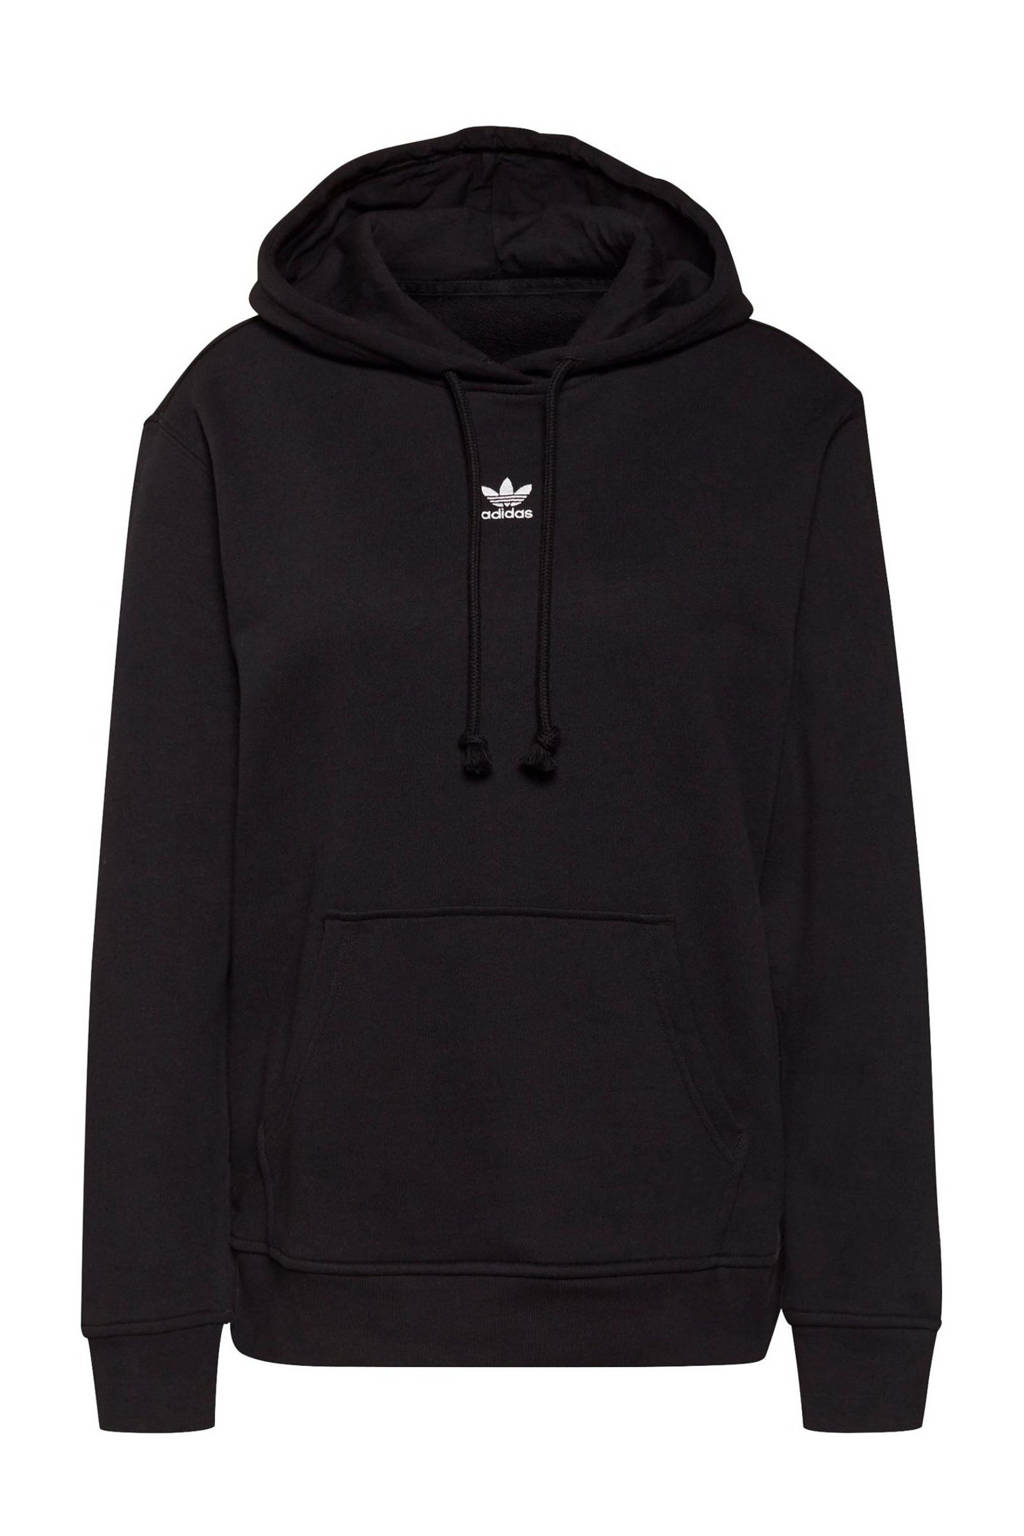 adidas Originals Adicolor hoodie zwart, Zwart